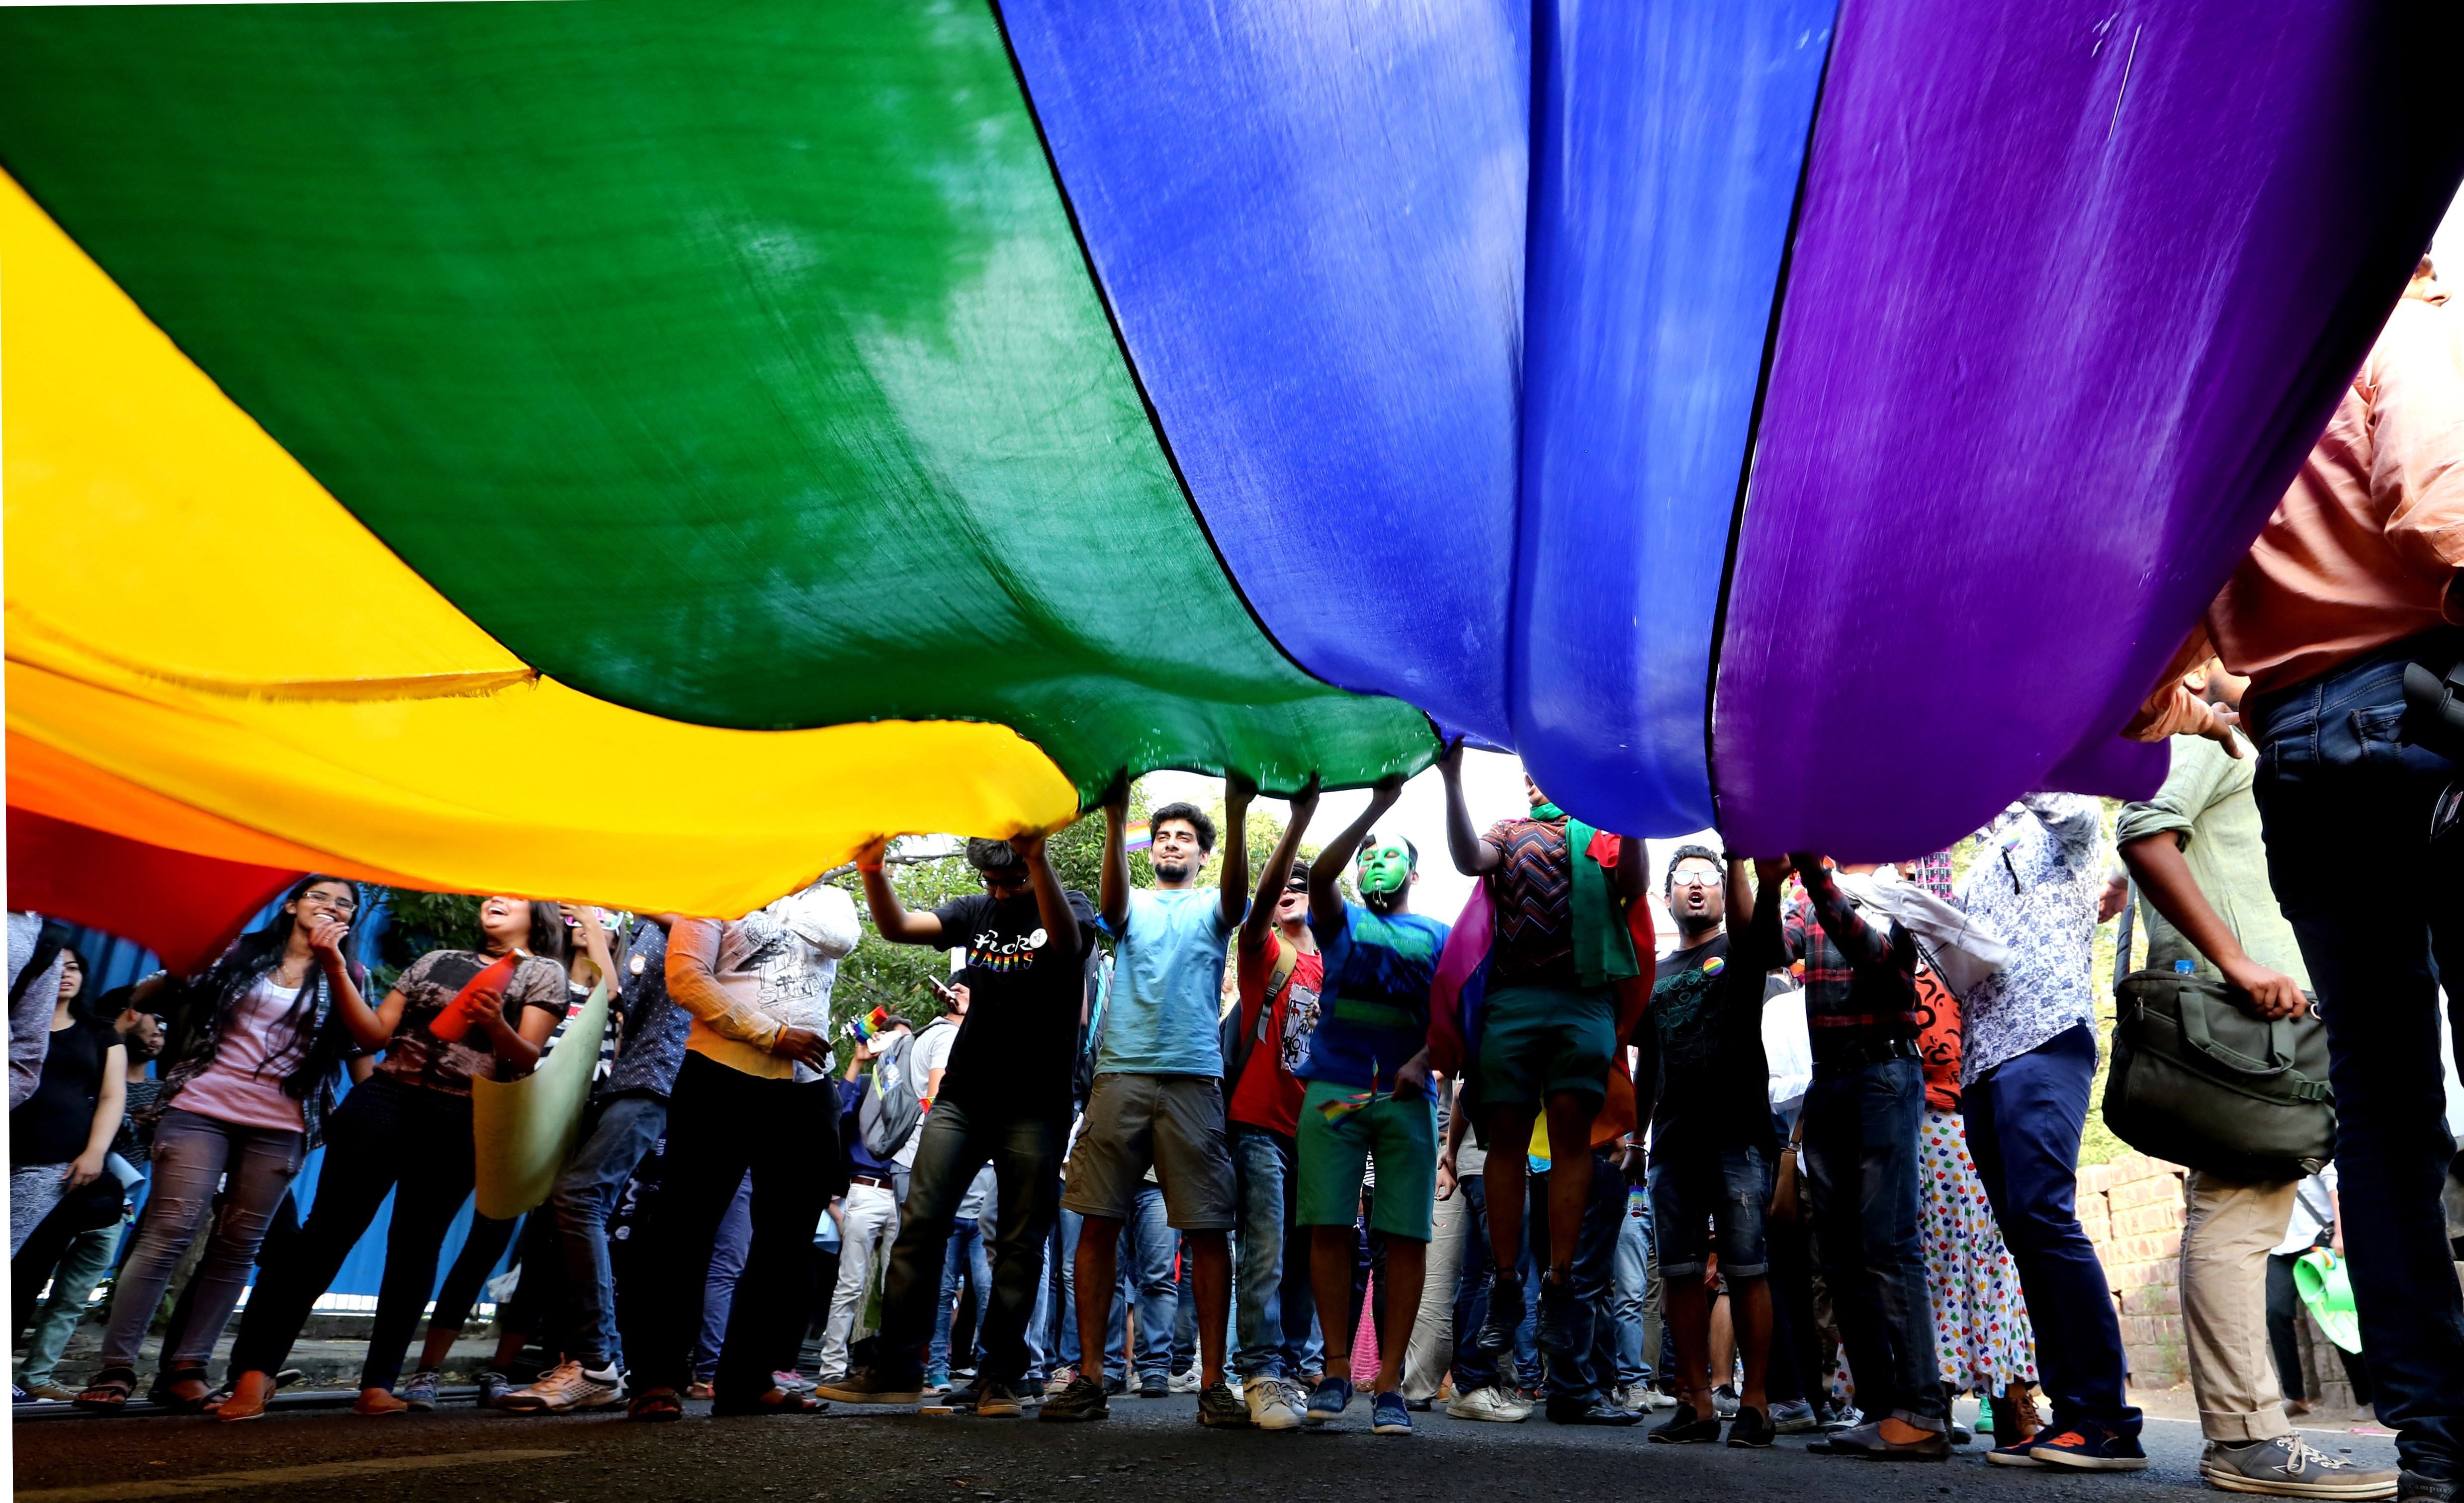 Γαλλία: Αύξηση των σωματικών επιθέσεων εις βαρος των ΛΟΑΤΚΙ+